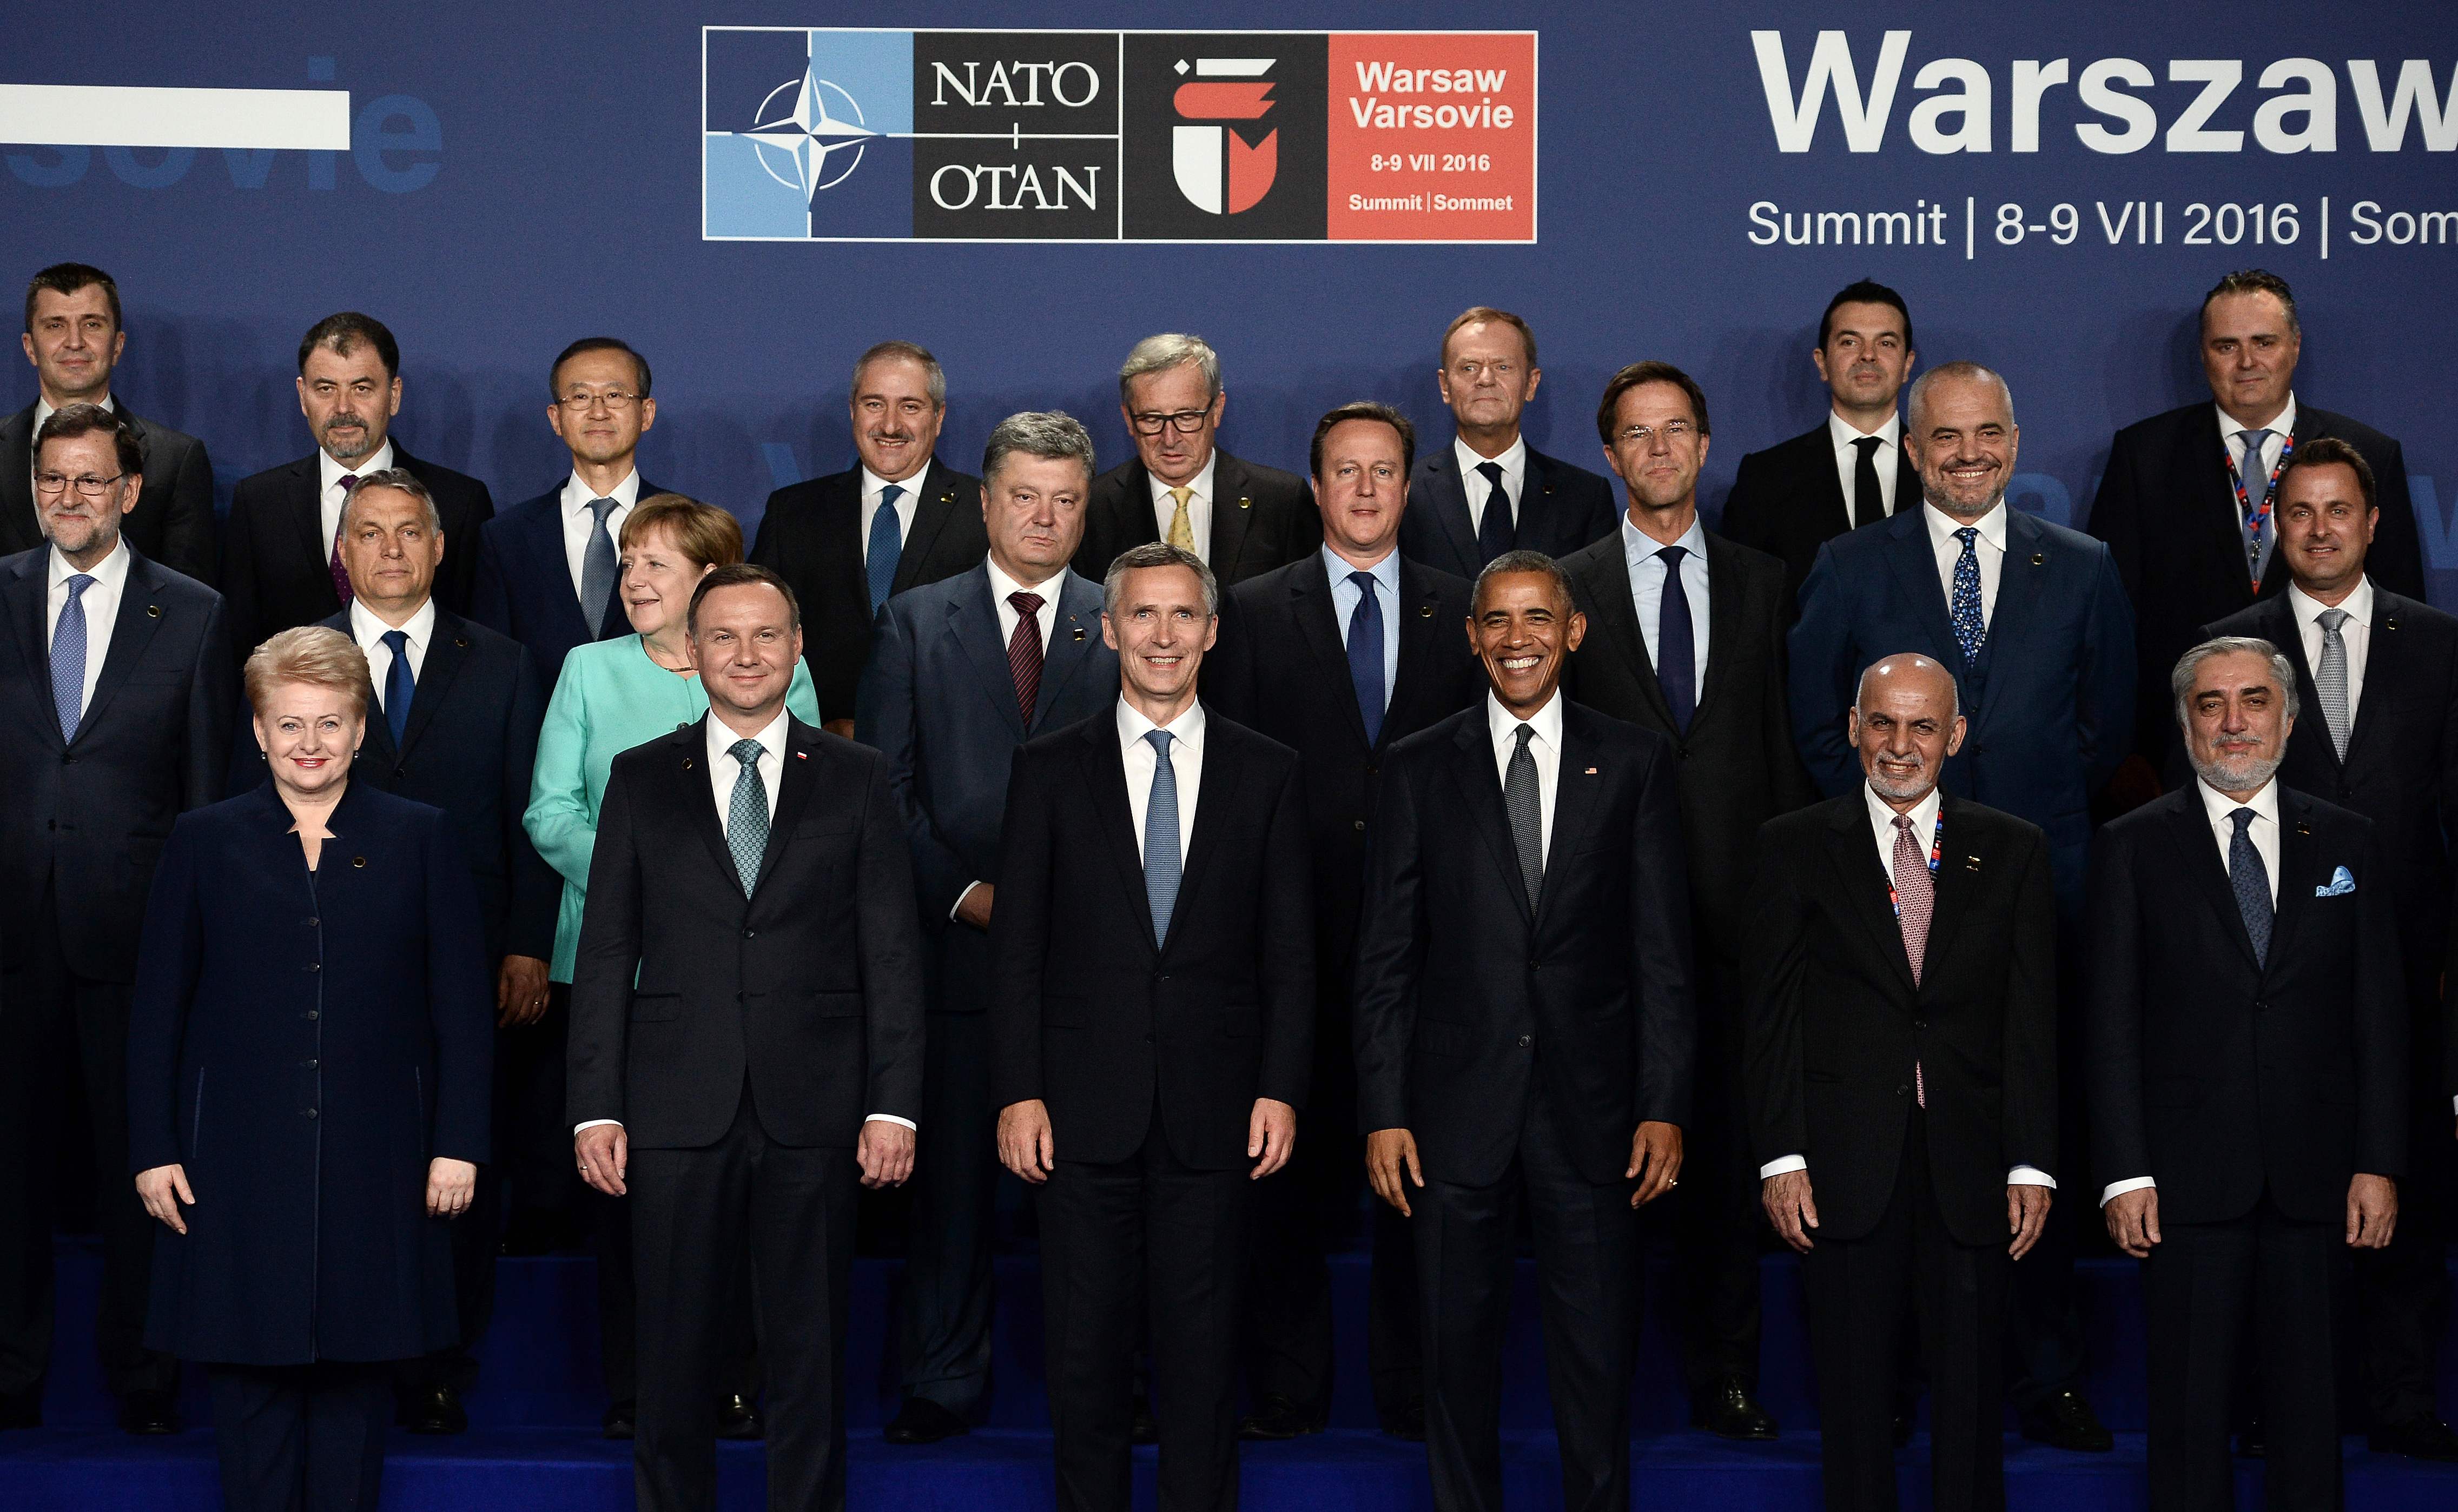 Cumbre de Varsovia (II): Obama enviará 1.000 soldados a Polonia